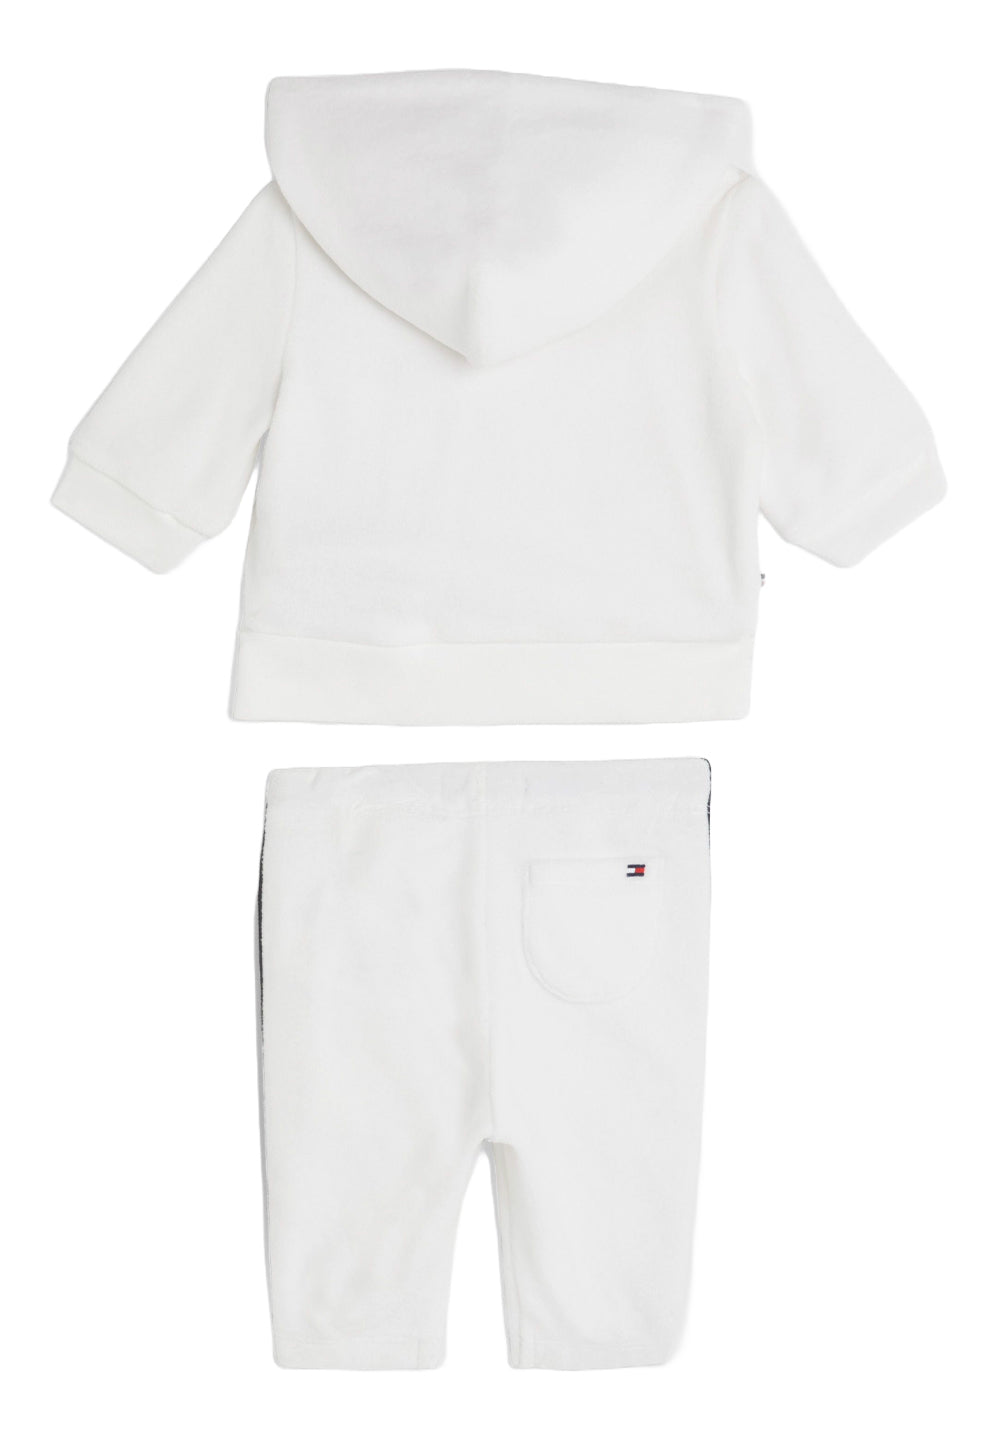 Weißes Sweatshirt-Set für Neugeborene